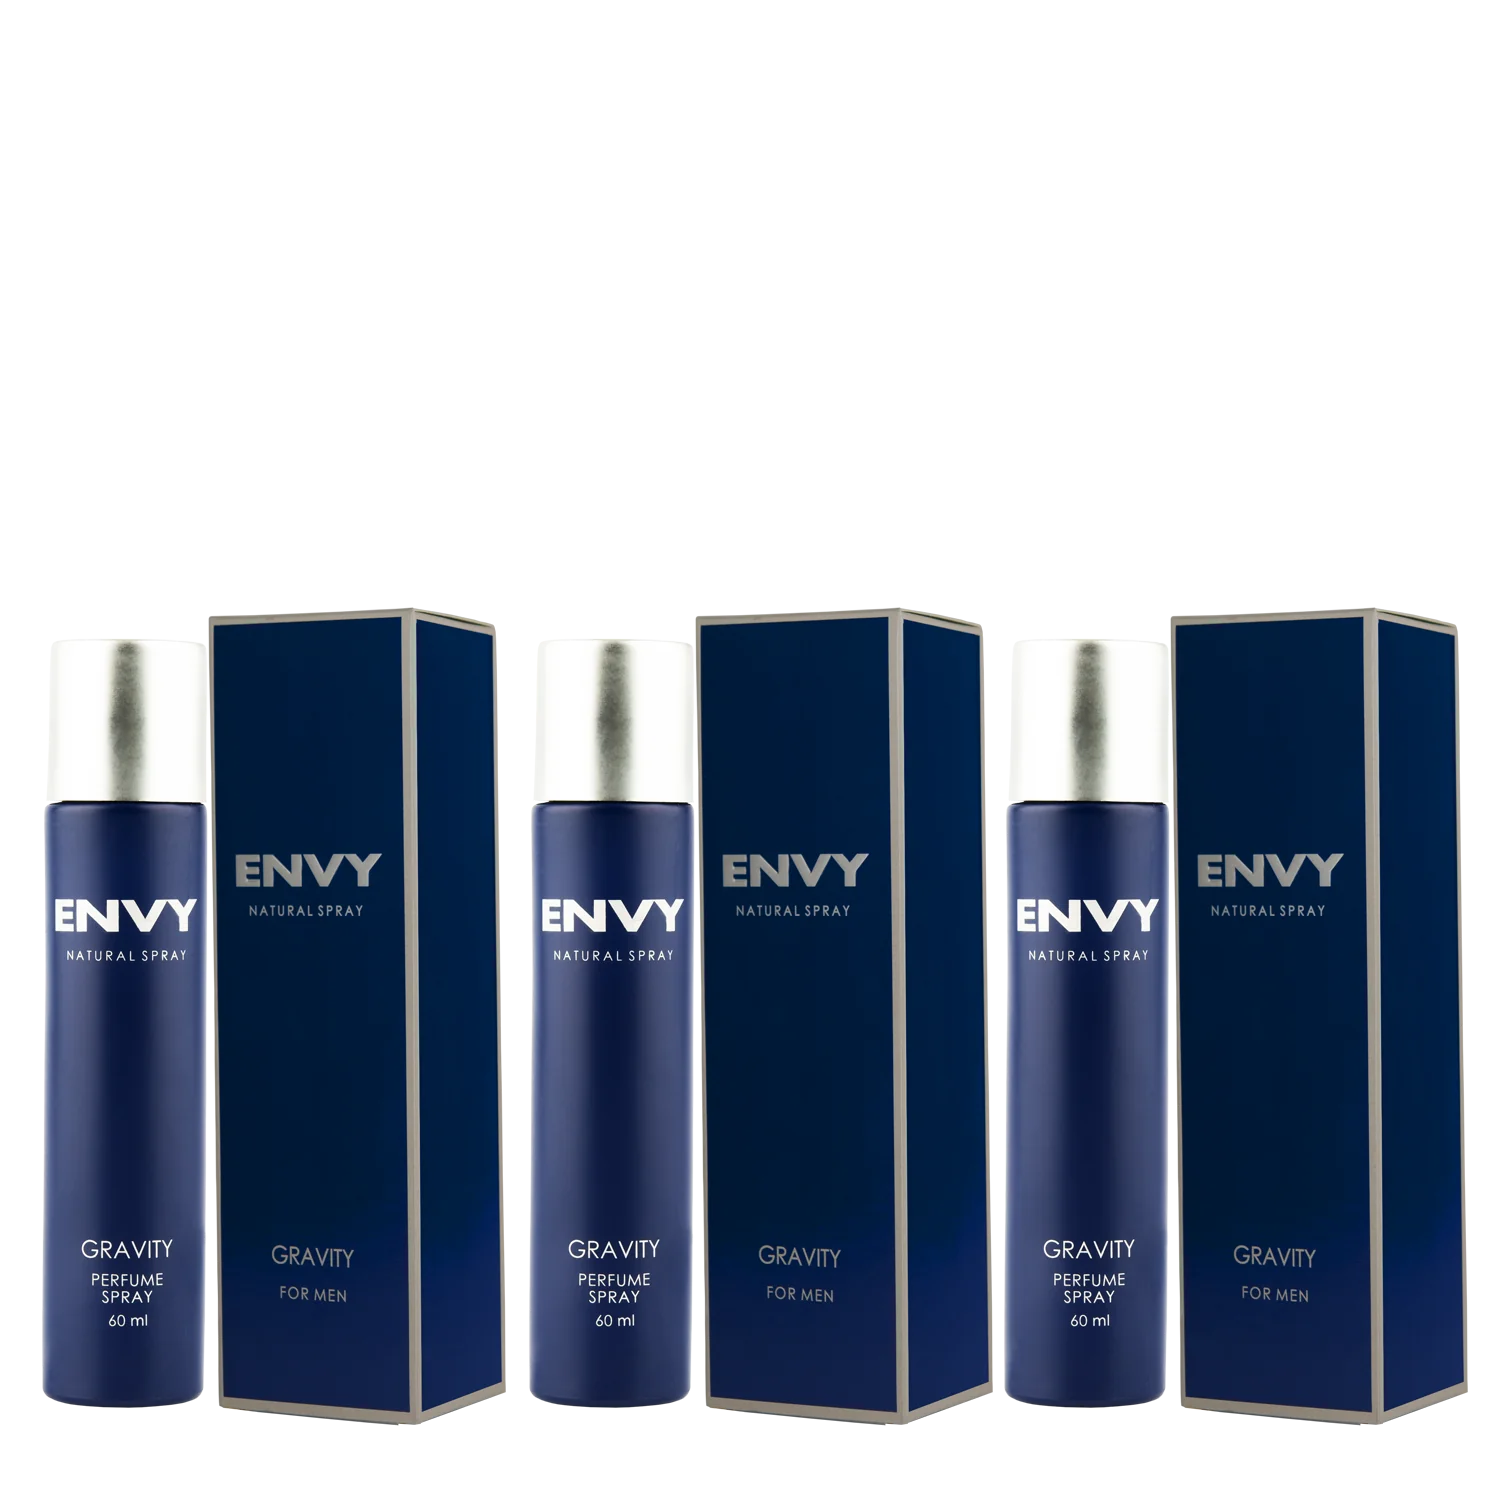 Envy Perfume Natural Spray gravity